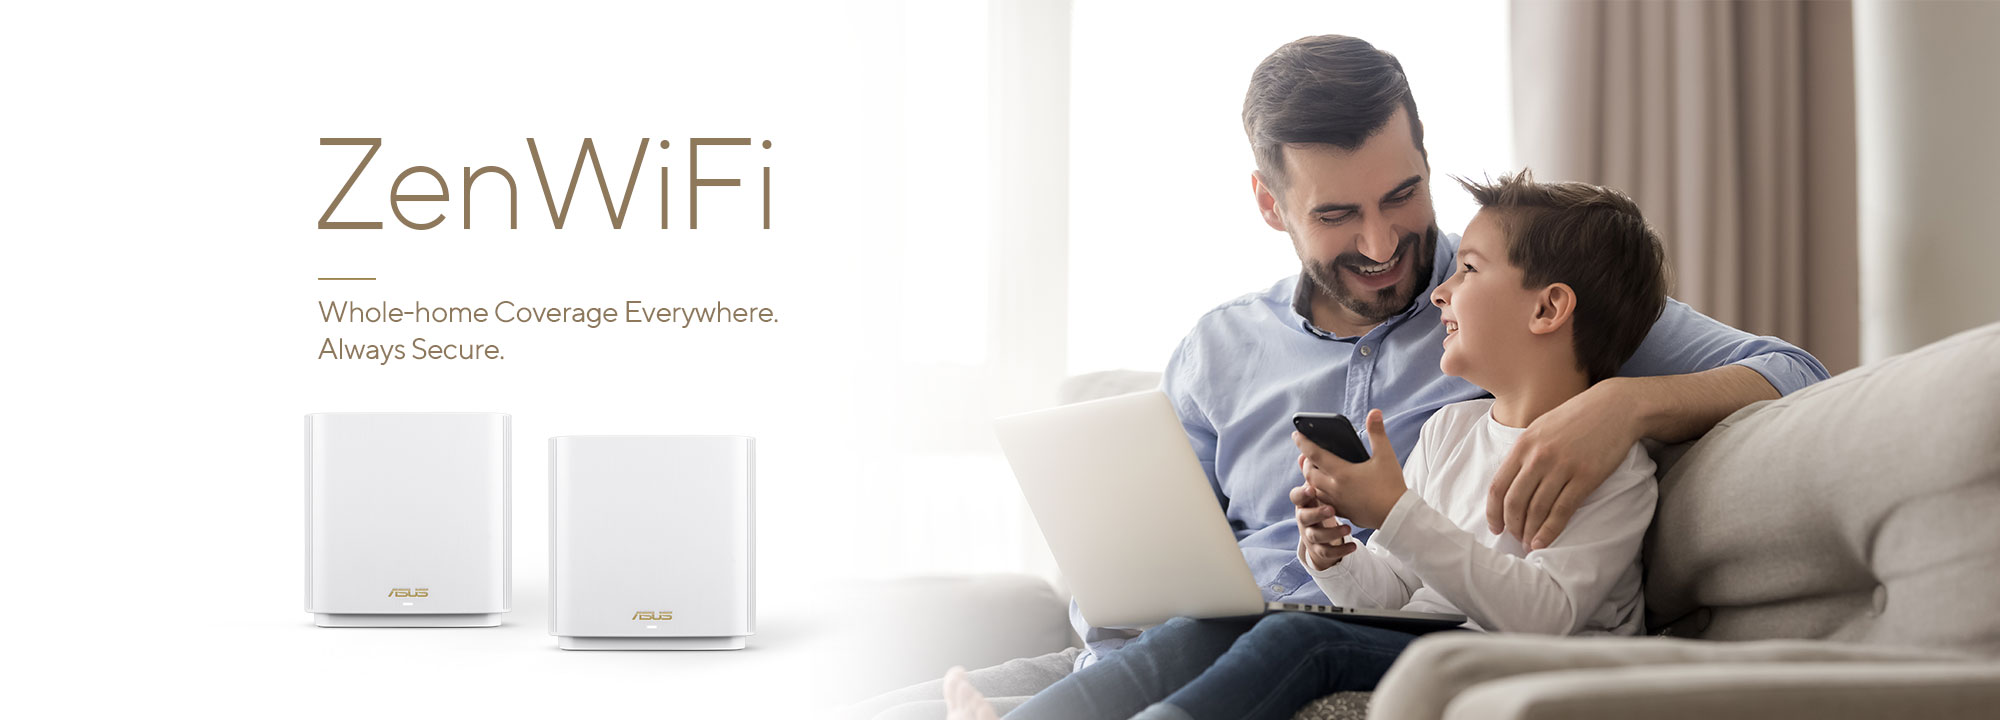 ASUS ZenWiFi is het beste mesh wifi-systeem voor de hele woning, dat stabiele en snelle wifi-connectiviteit biedt voor al uw apparaten.